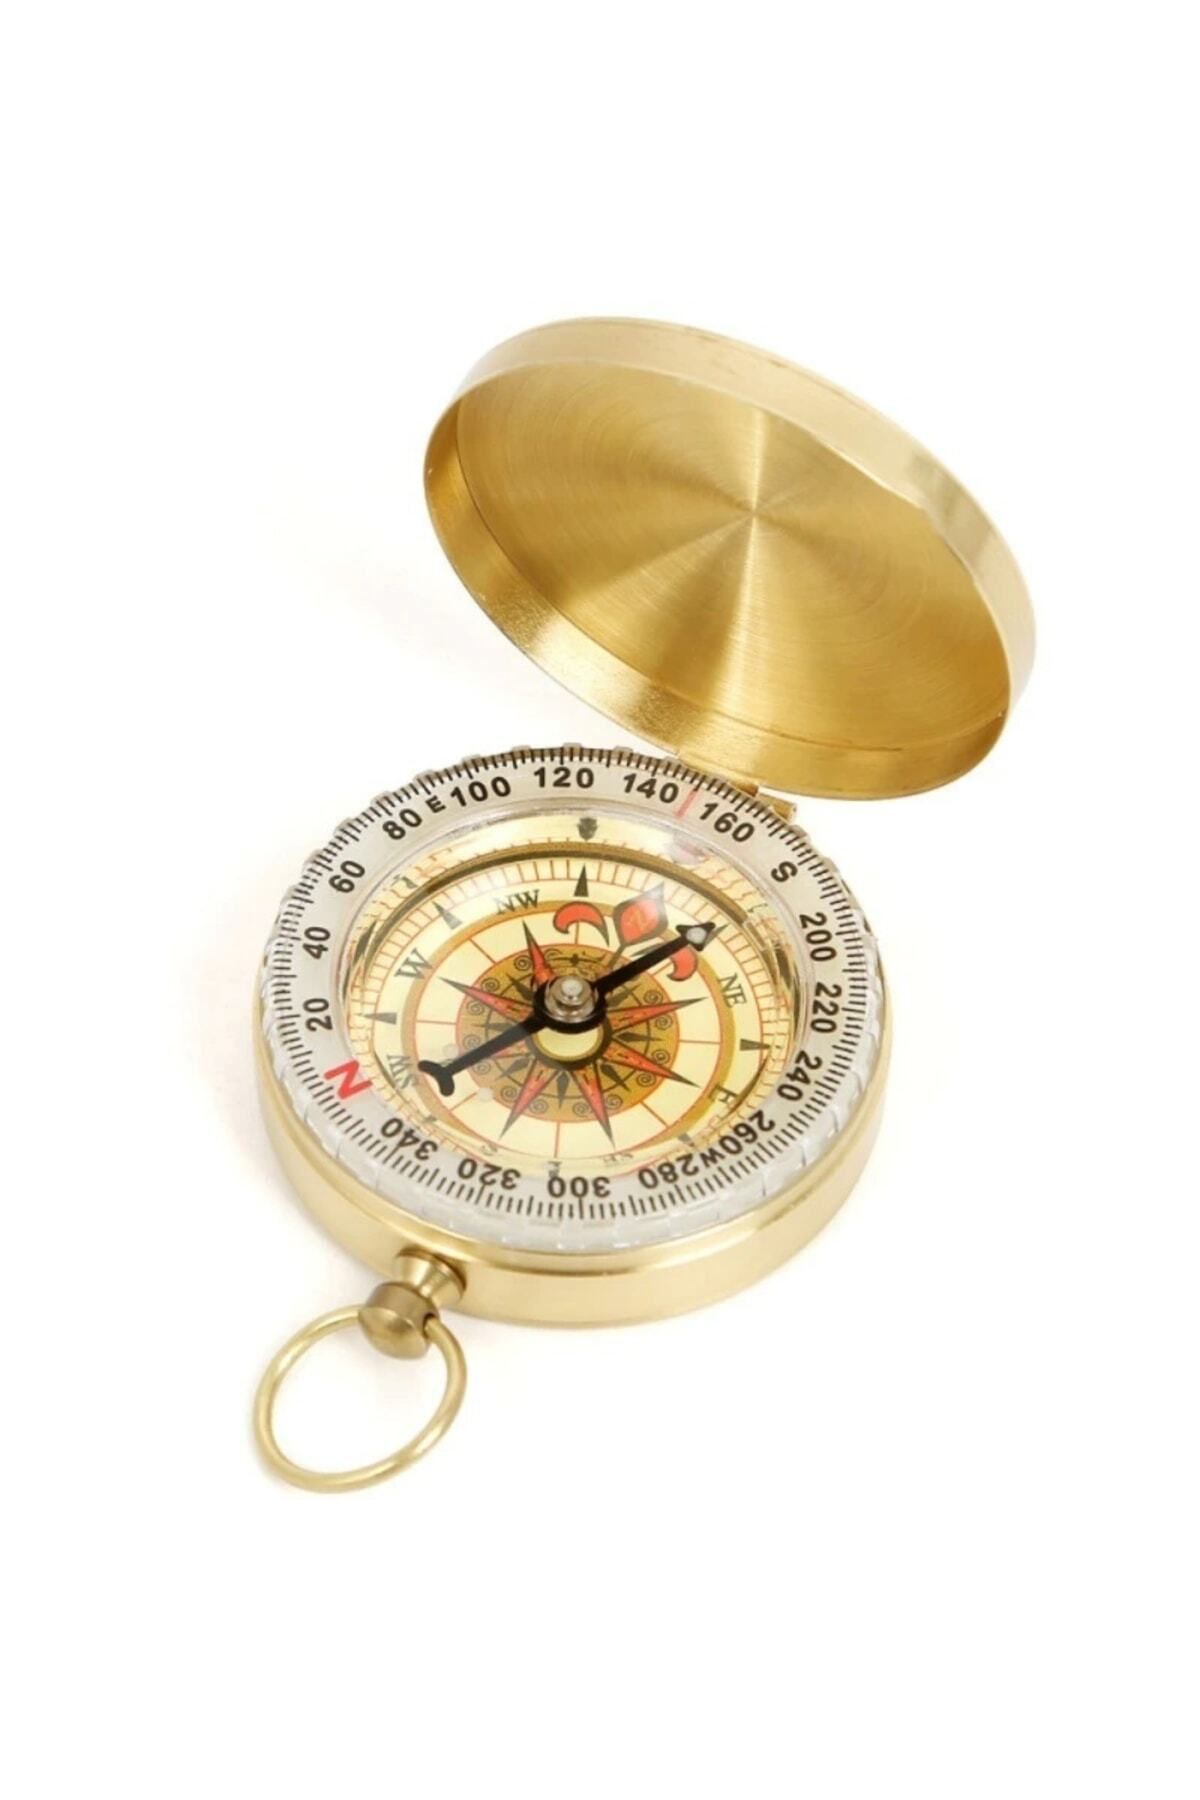 Compass Yuvarlak Sarı Metal Kasa Su Geçirmez Fosforlu Dayanıklı Pusula (5cmx1.6cm)